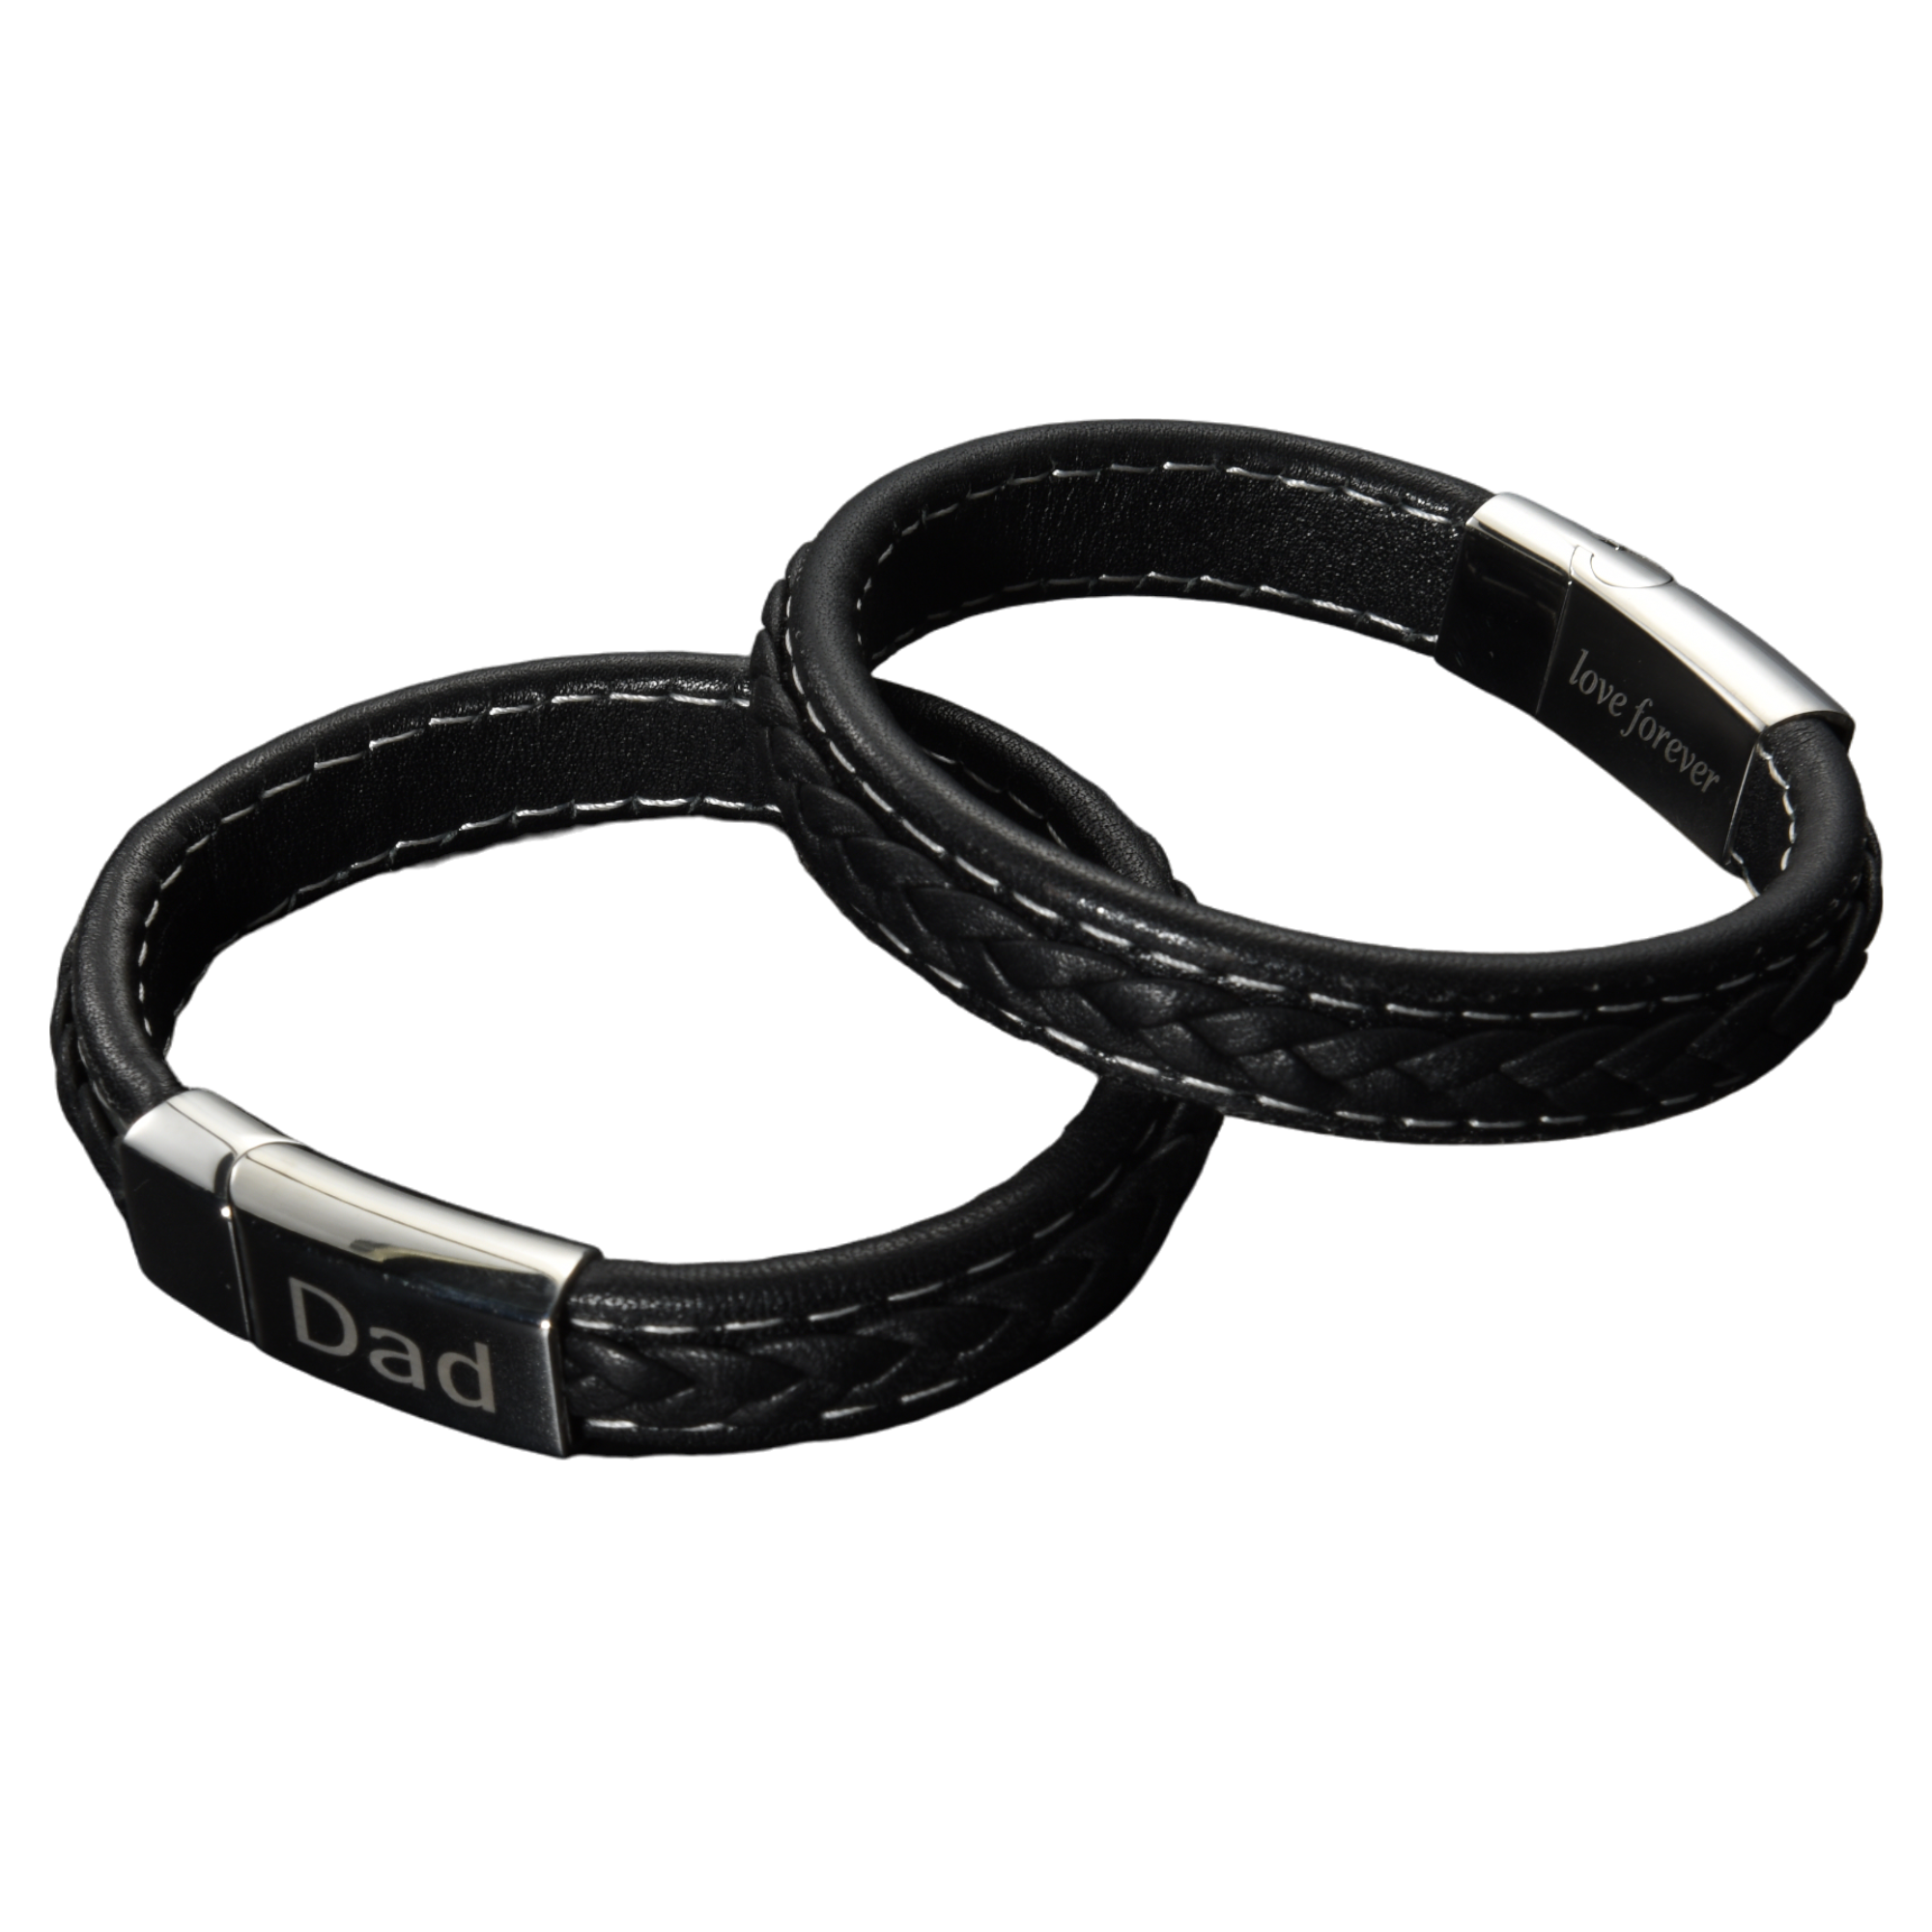 10pcs-Men’s Genuine Black Leather Bracelet With Dad And Love Forever Engraving|GCJ043-Black-Dad-Love Forever|UK seller